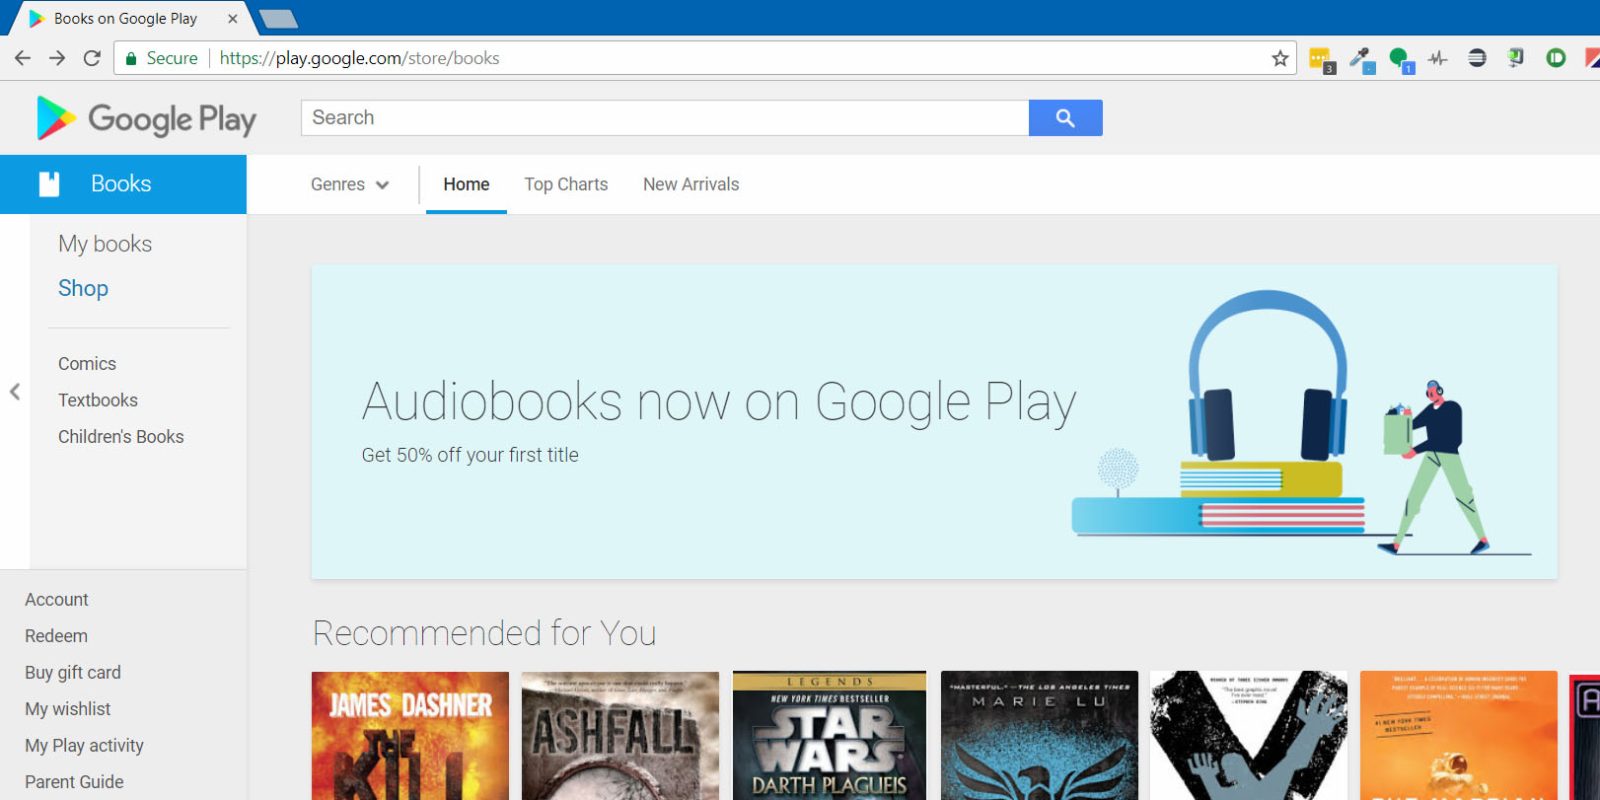 google_play_audiobooks_banner_1